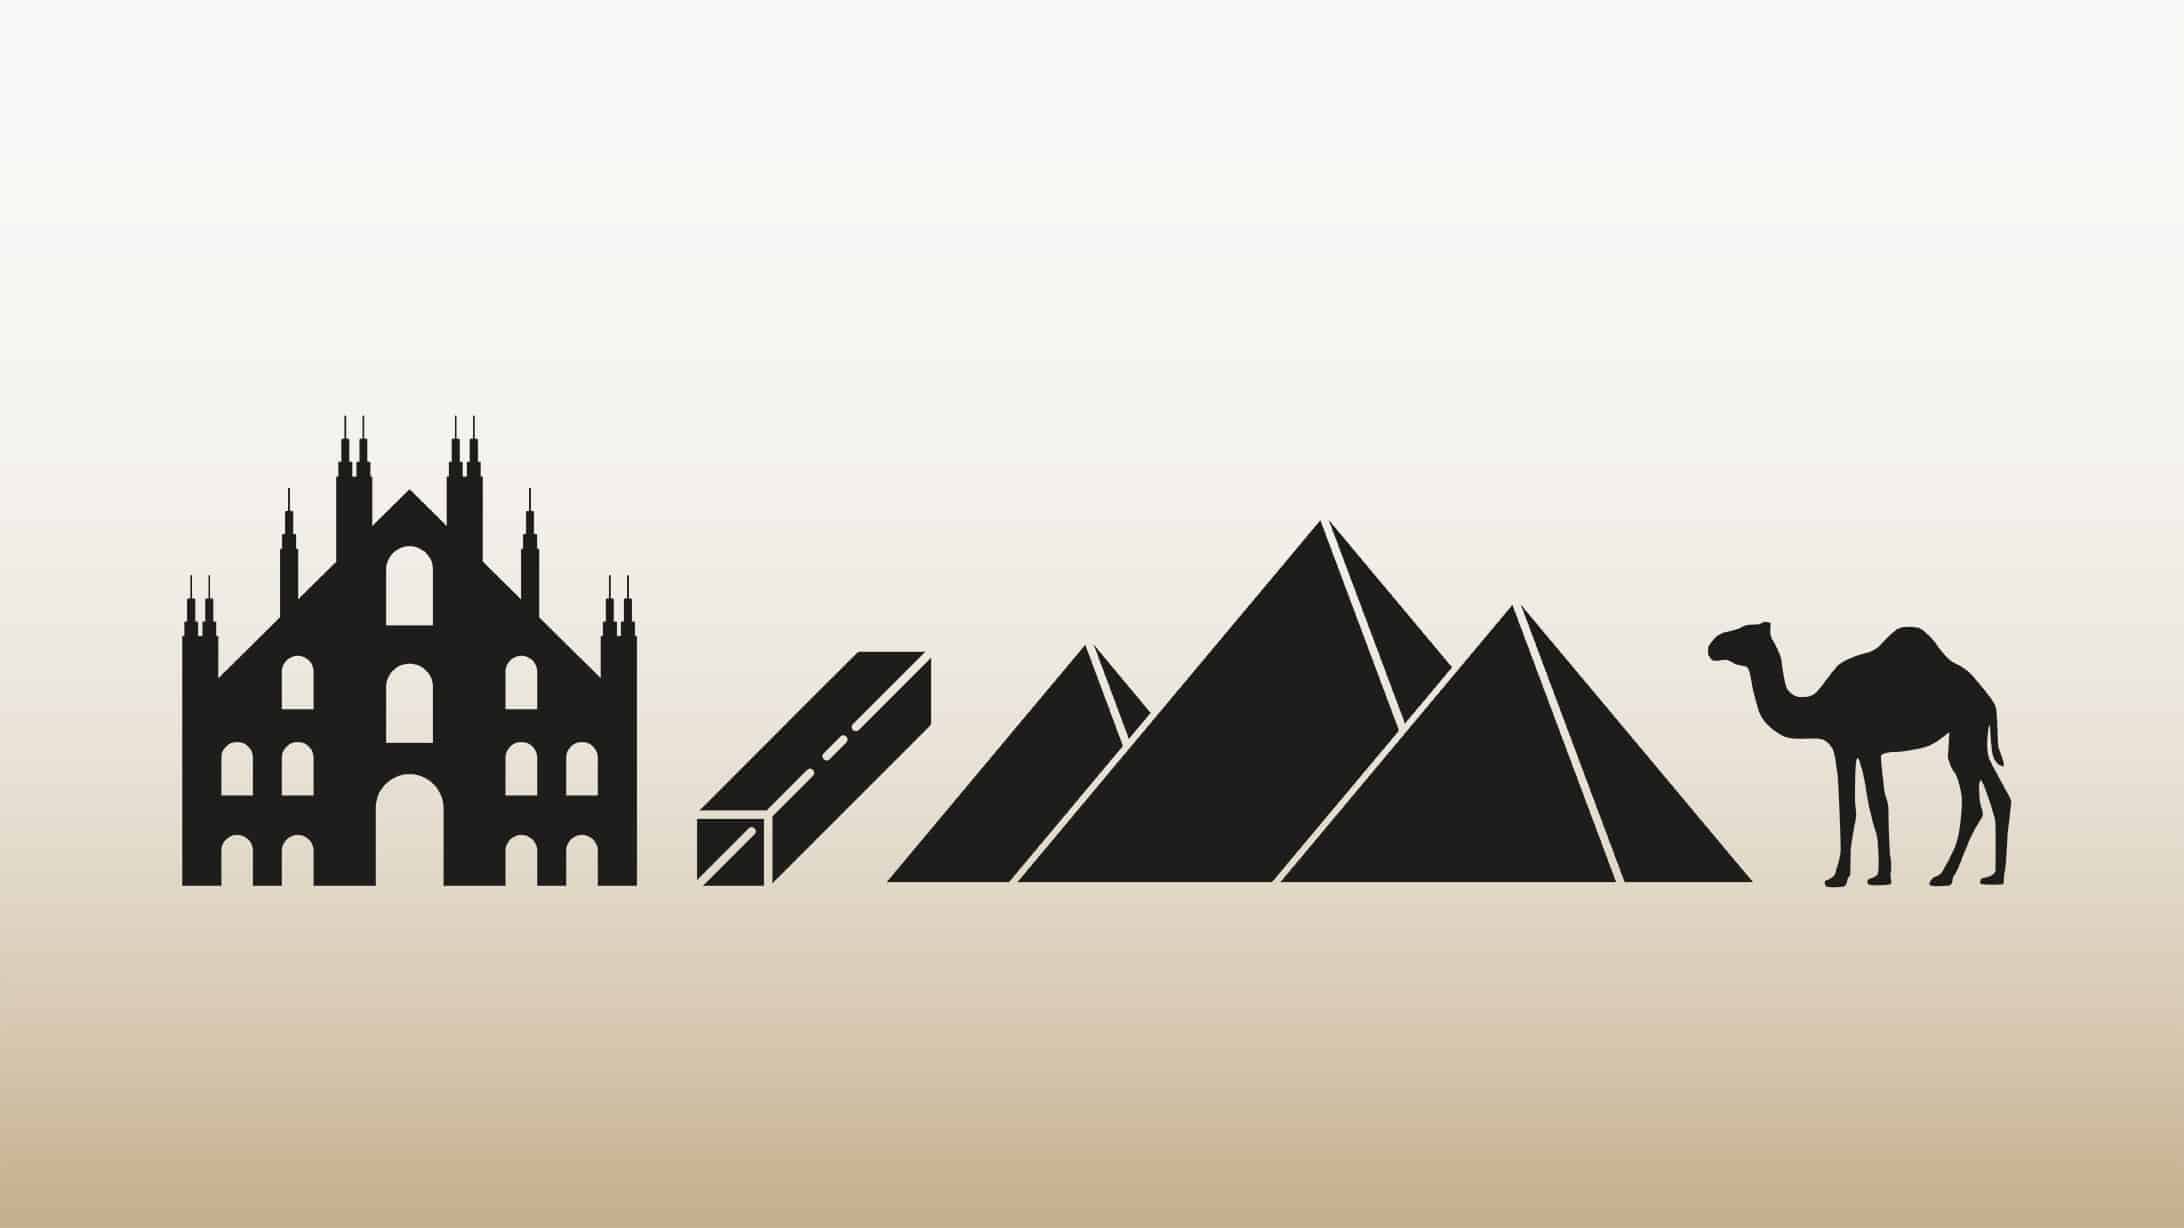 Icons schwarz auf hellem Hintergrund: Mailänder Dom, ein Rohr, drei Pyramiden, ein Kamel